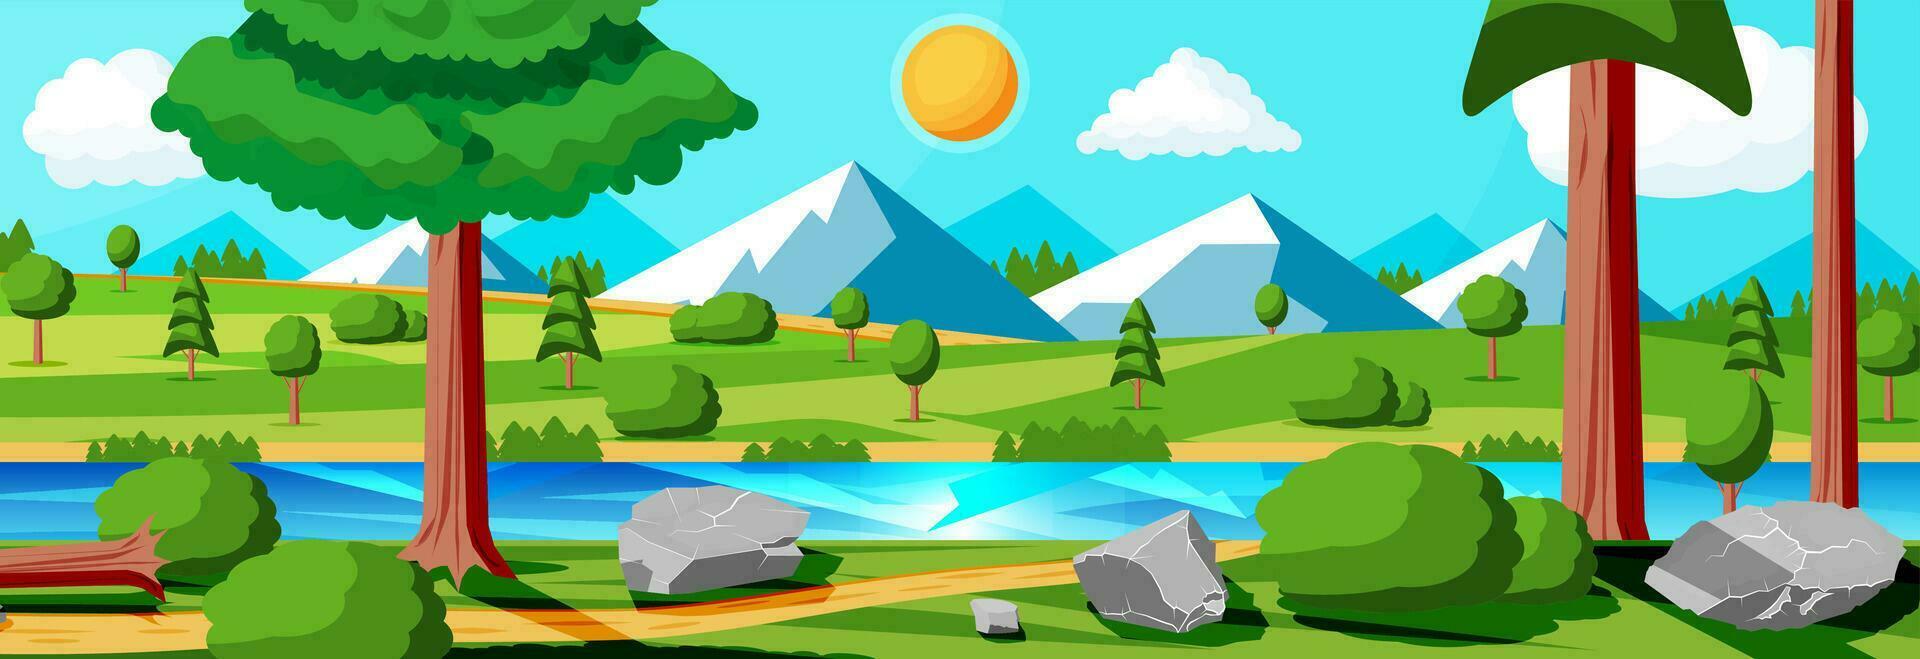 paisaje de montañas y verde sierras. verano naturaleza paisaje con rocas, bosque, césped, sol, cielo, lago y nubes nacional parque o naturaleza reservar. vector ilustración en plano estilo